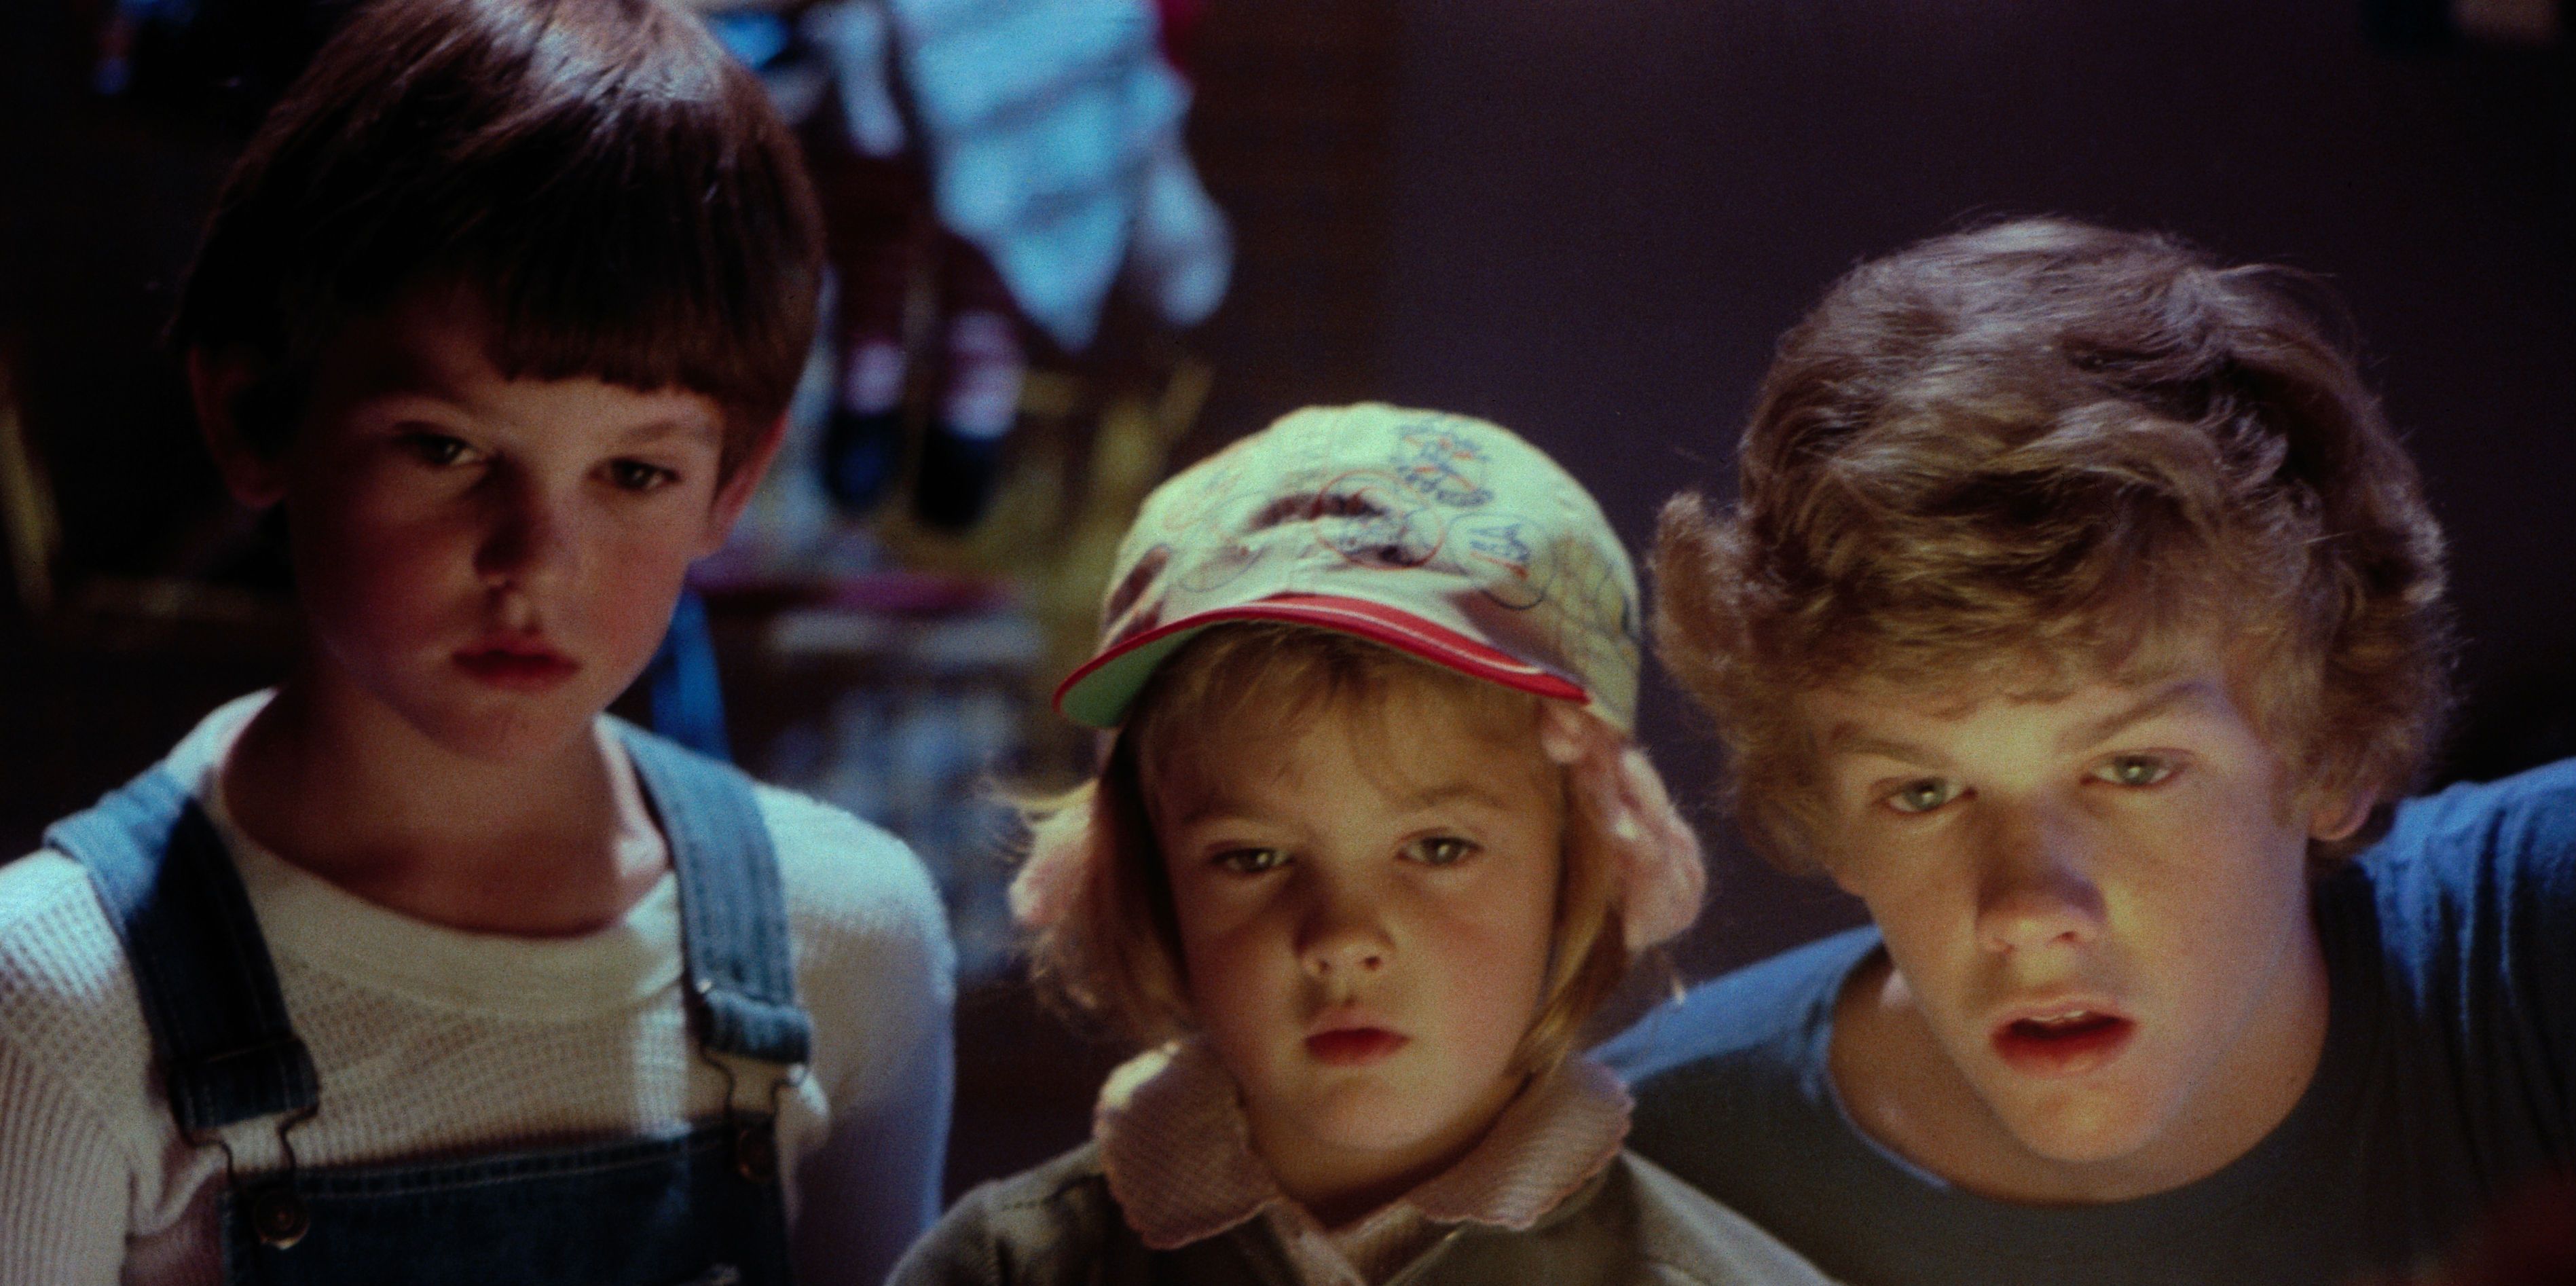 Drew Barrymore Believed E.T. Was Real & Spielberg Encouraged It